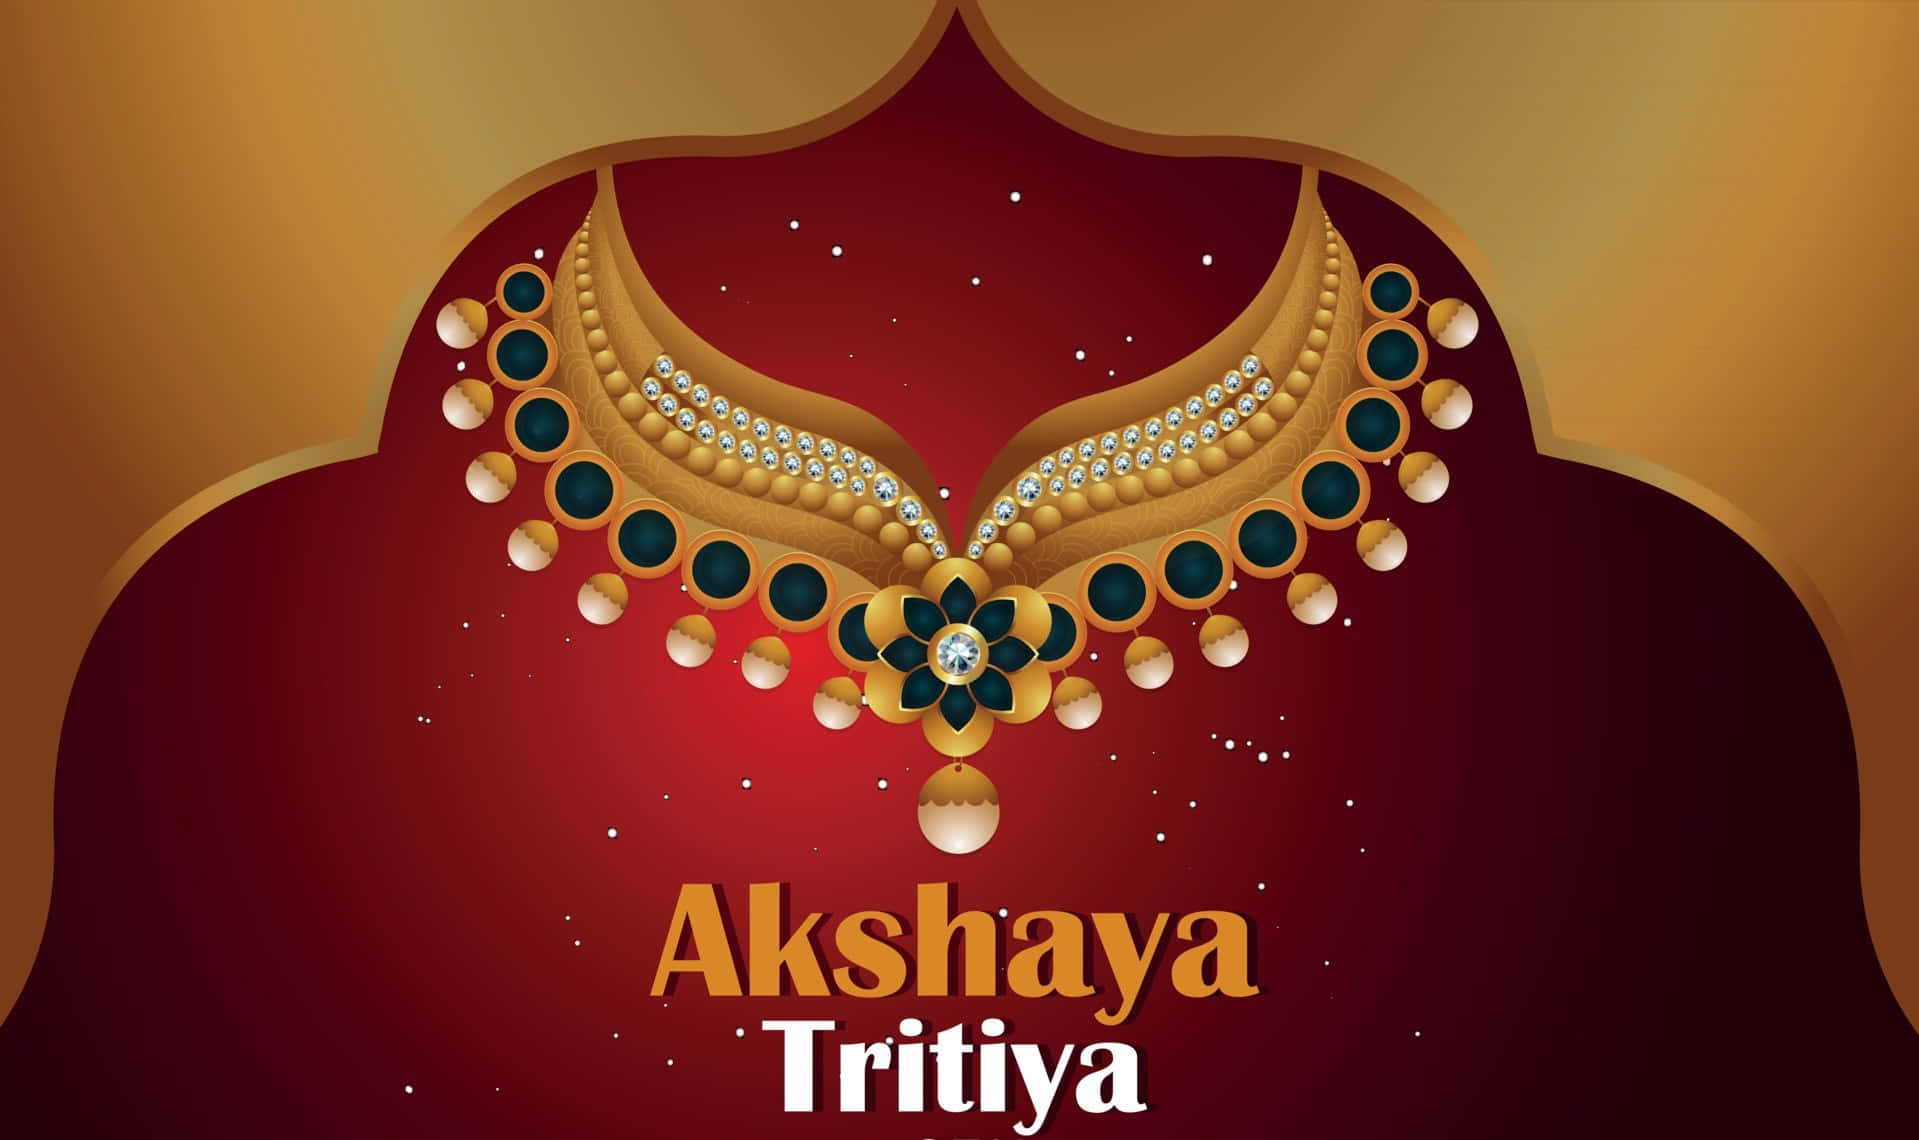 Akshayatriyutha - Akshaya Triyutha - Akshaya Triyutha